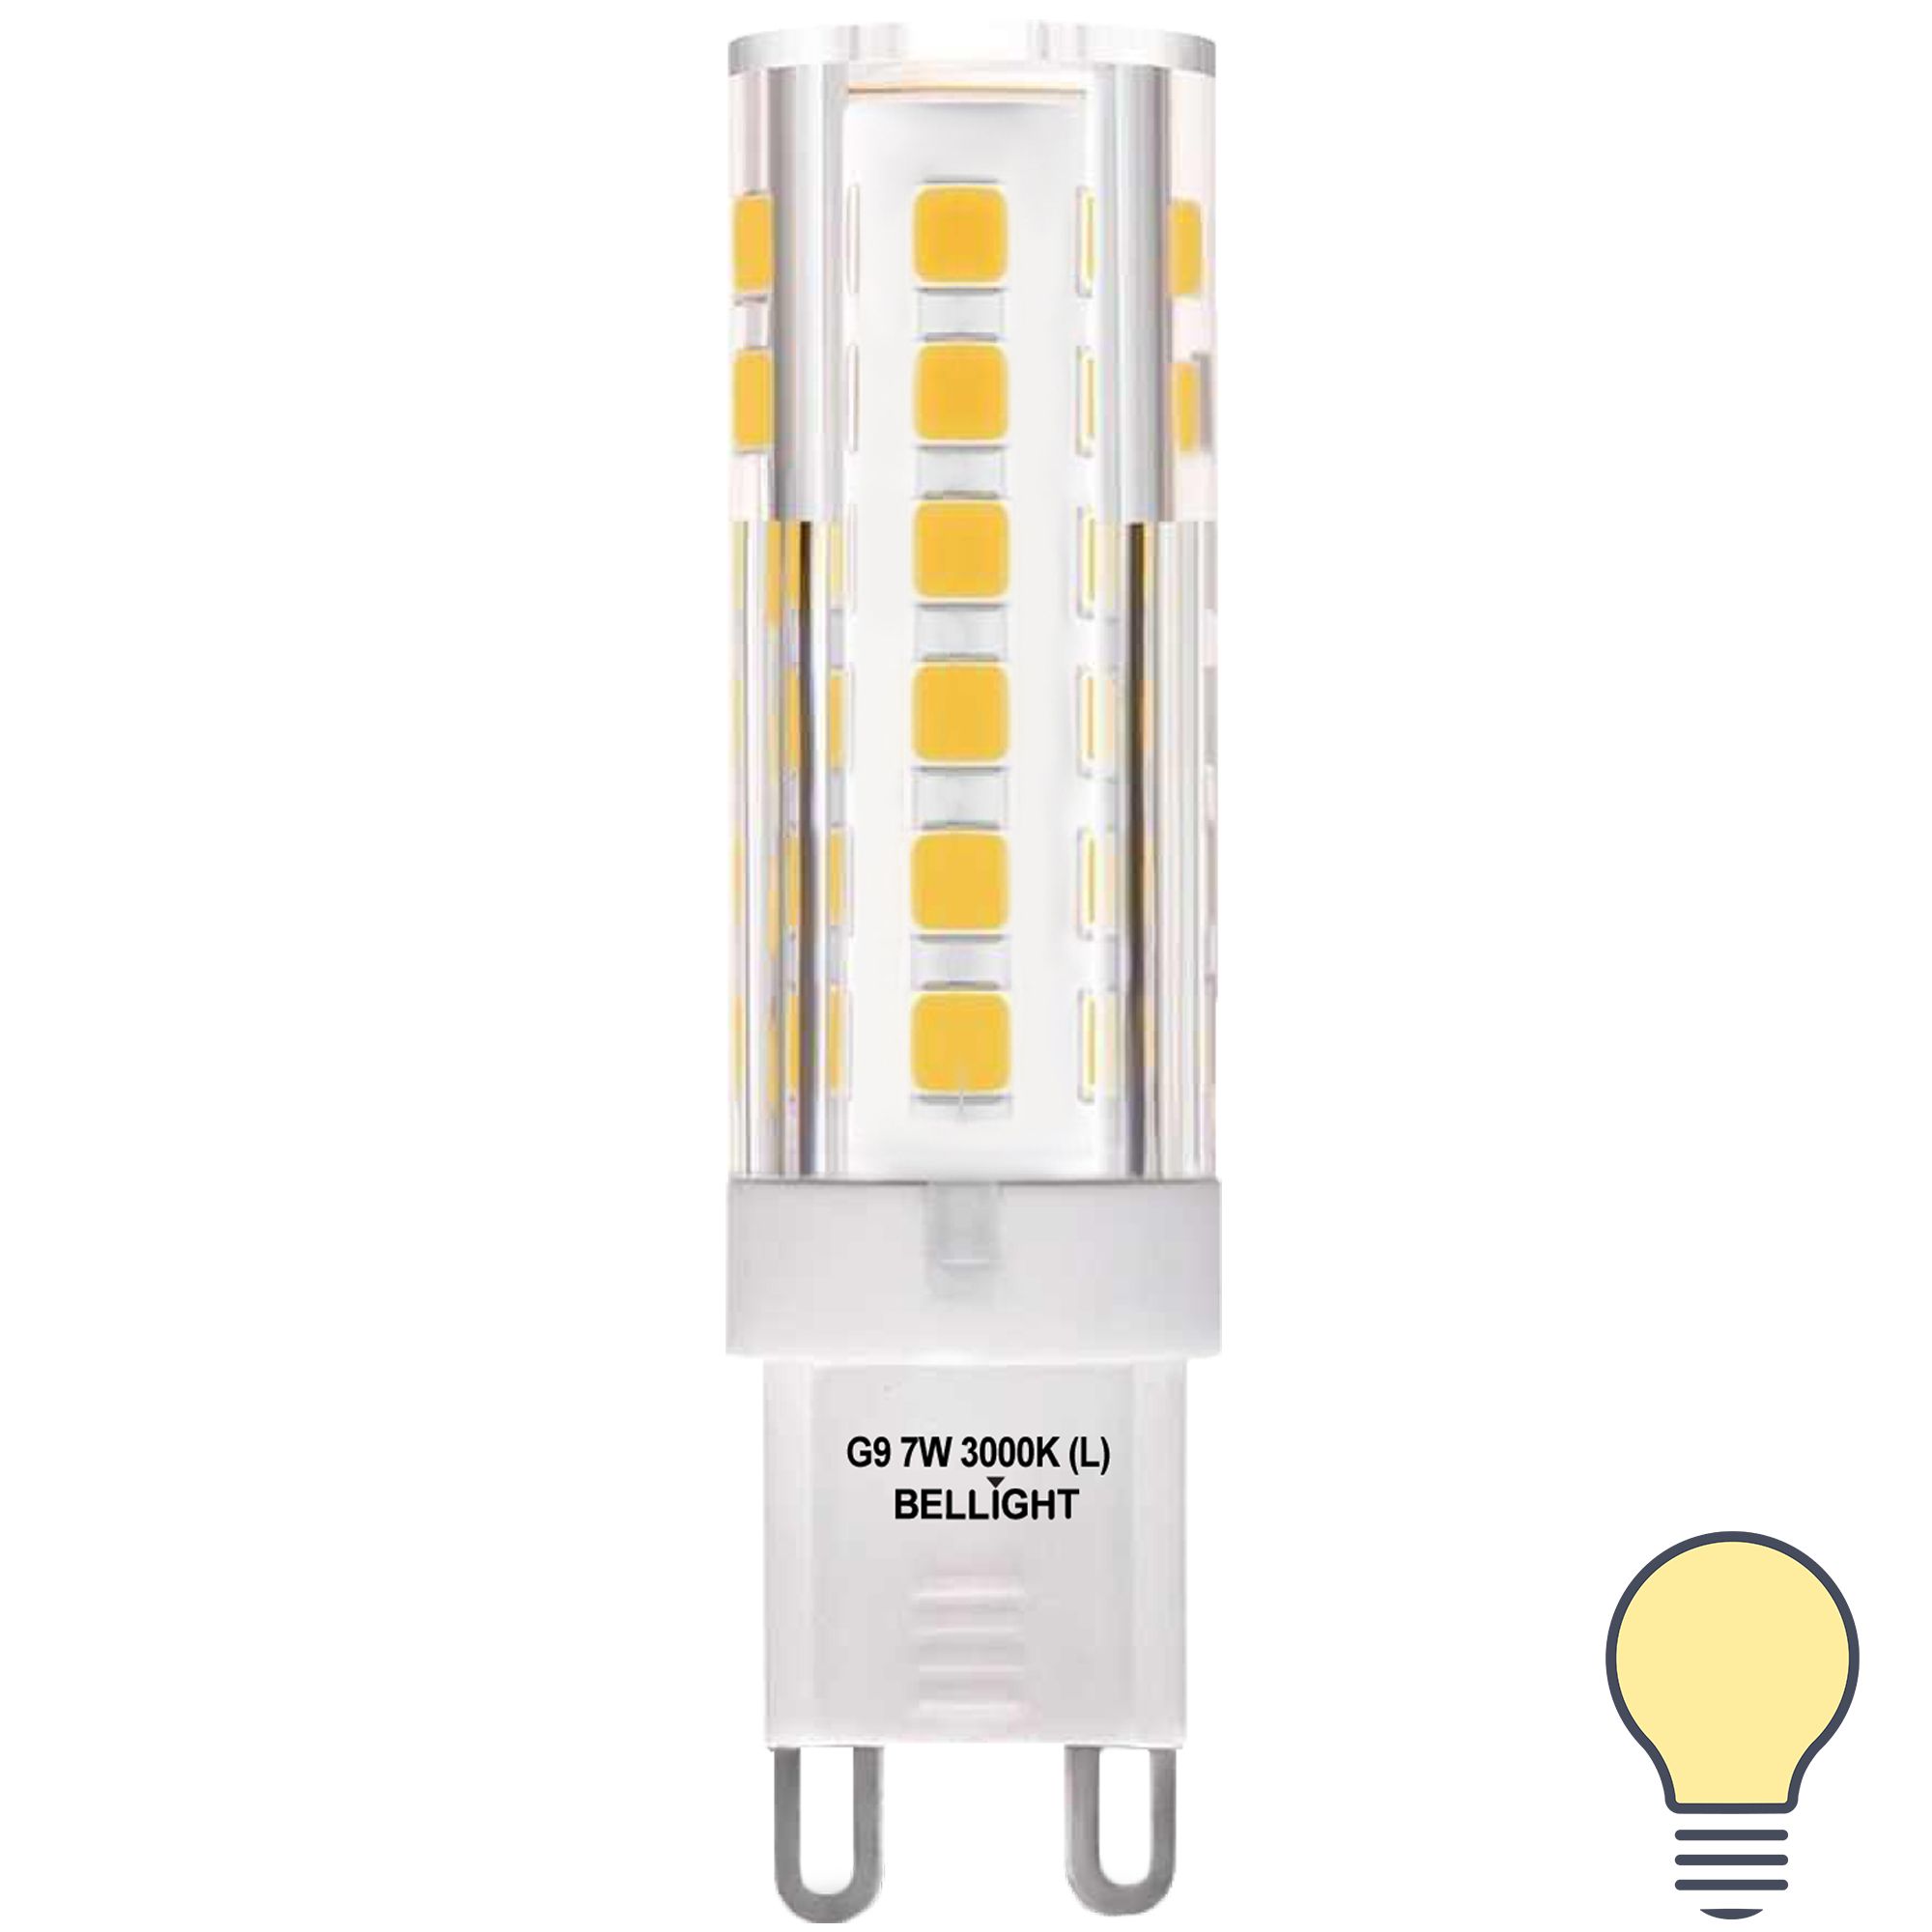 Светодиодные led лампы g9. Лампа светодиодная Feron lb-432 g9 5w 4000k. Лампа светодиодная Bellight g9 220-240 в 7 Вт капсула 600 лм теплый белый свет. Лампа светодиодная Feron lb g9 5w. Лампа led g9 9w 3300k.